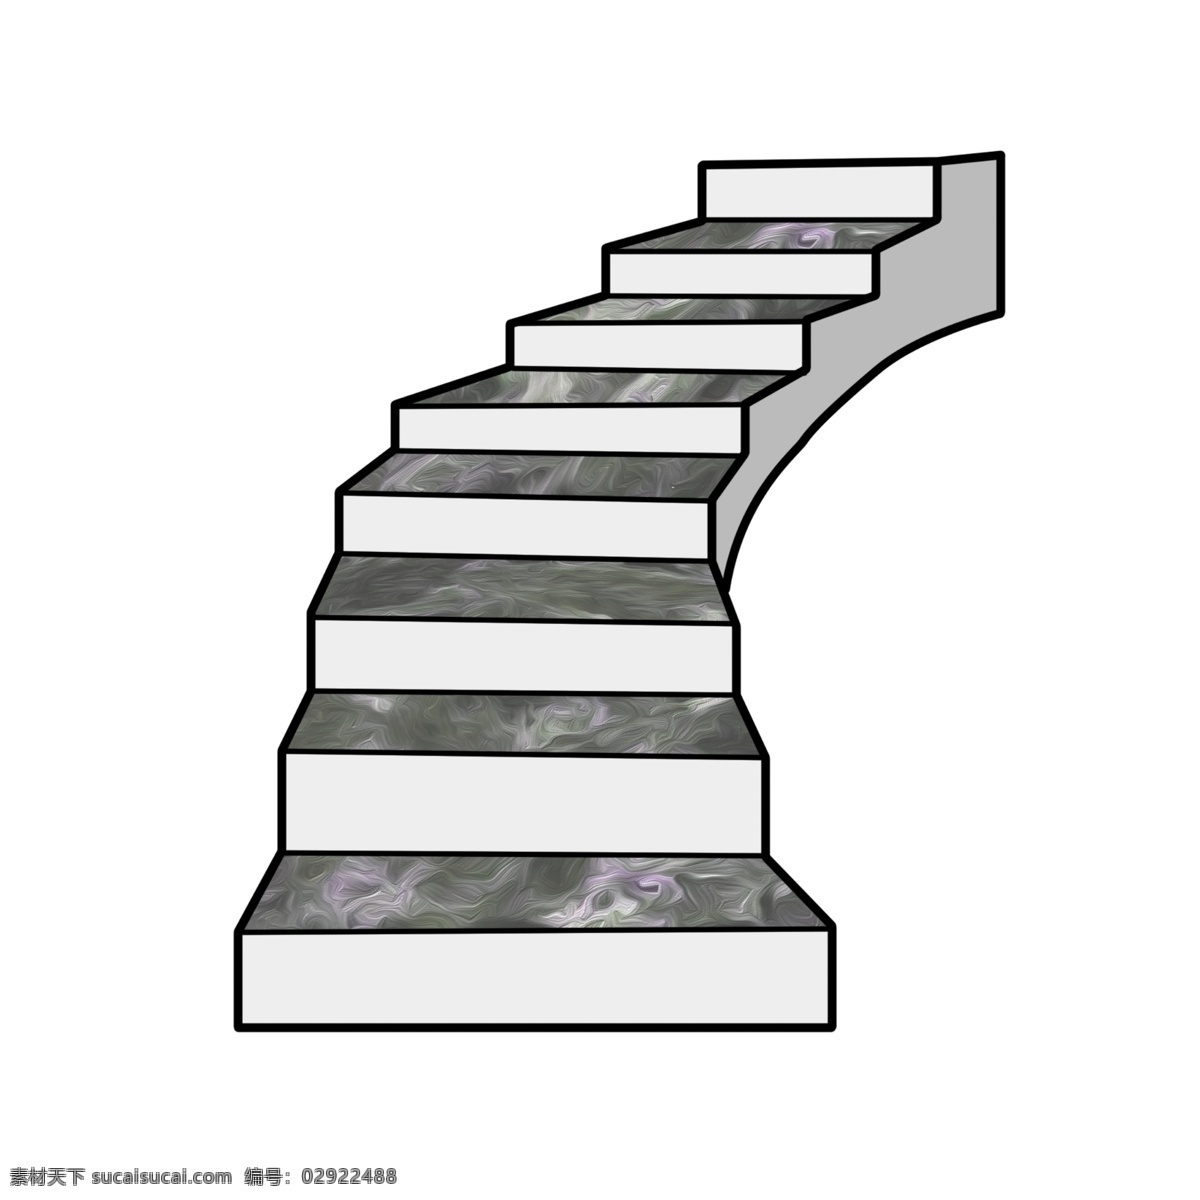 灰色 大理石 楼梯 插图 弯曲的楼梯 大理石楼梯 漂亮的楼梯 精致的楼梯 建筑楼梯 传统插画 装饰楼梯